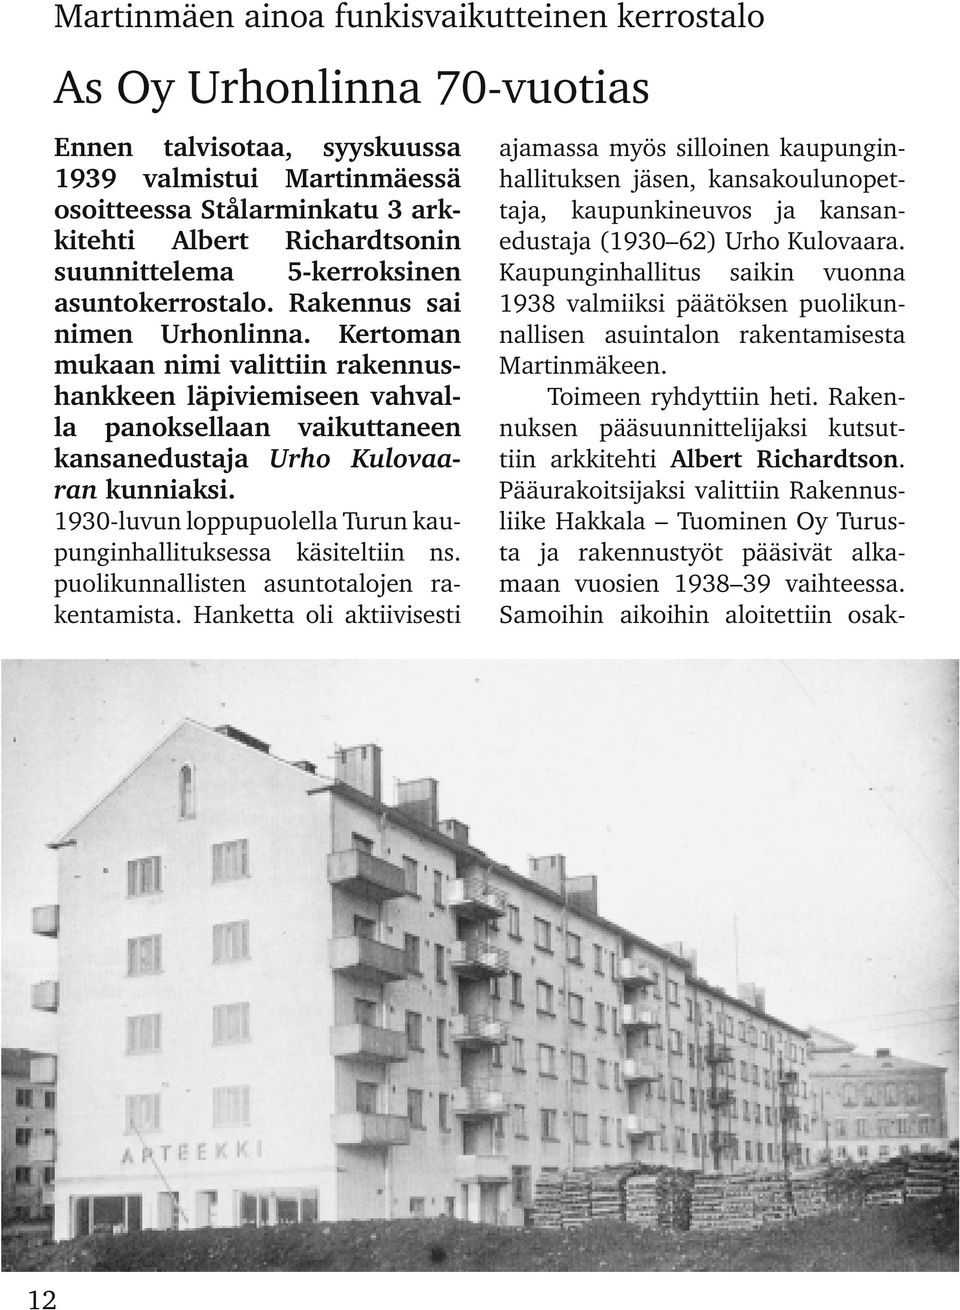 Kertoman mukaan nimi valittiin rakennus hankkeen läpiviemiseen vahval la panoksellaan vaikuttaneen kansanedustaja Urho Kulovaa ran kunniaksi.